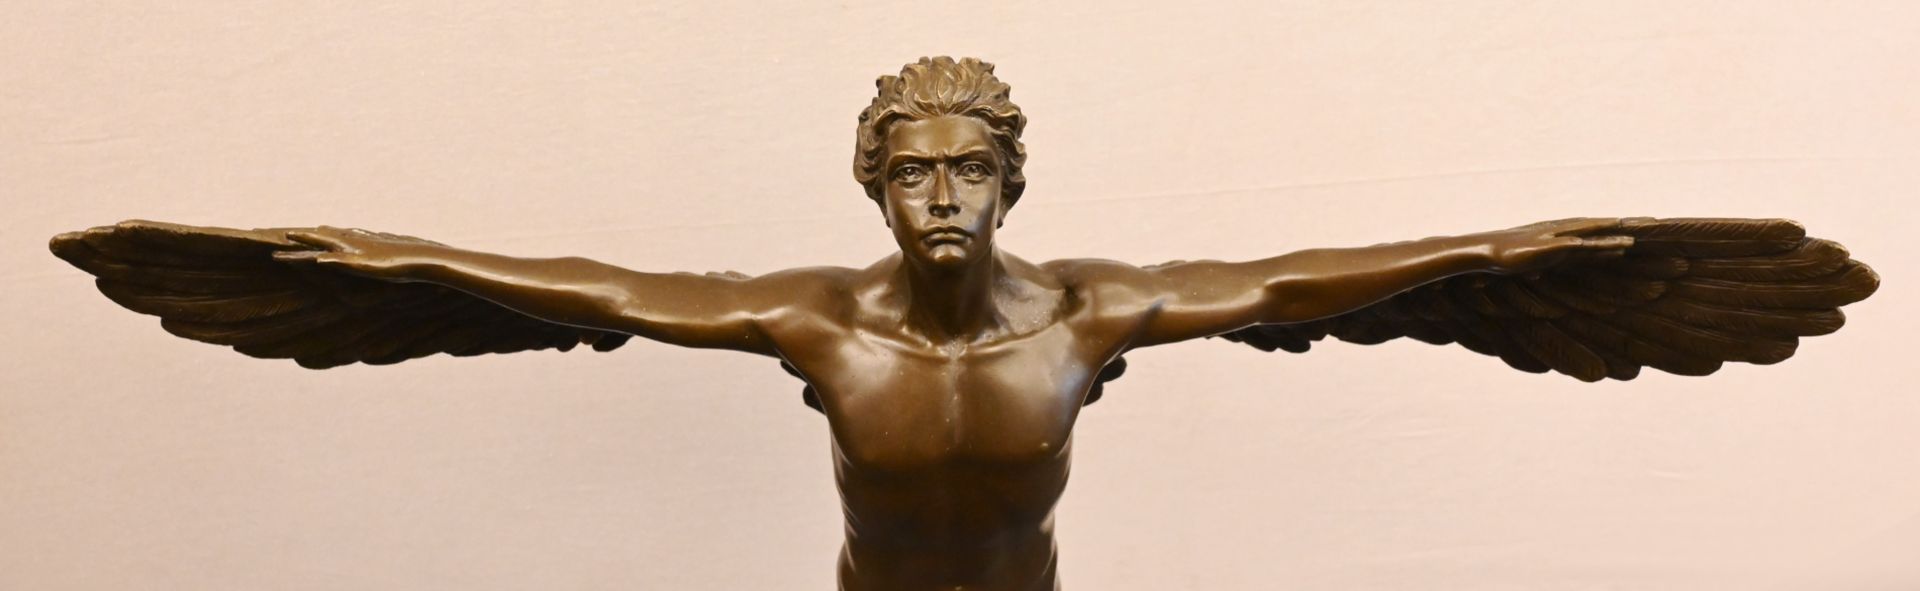 1Statue Bronze "Ikarus" Replik nach Adolph Alexander Weinman, H ca. 60cm auf rundem Marmorsockel, - Bild 2 aus 6